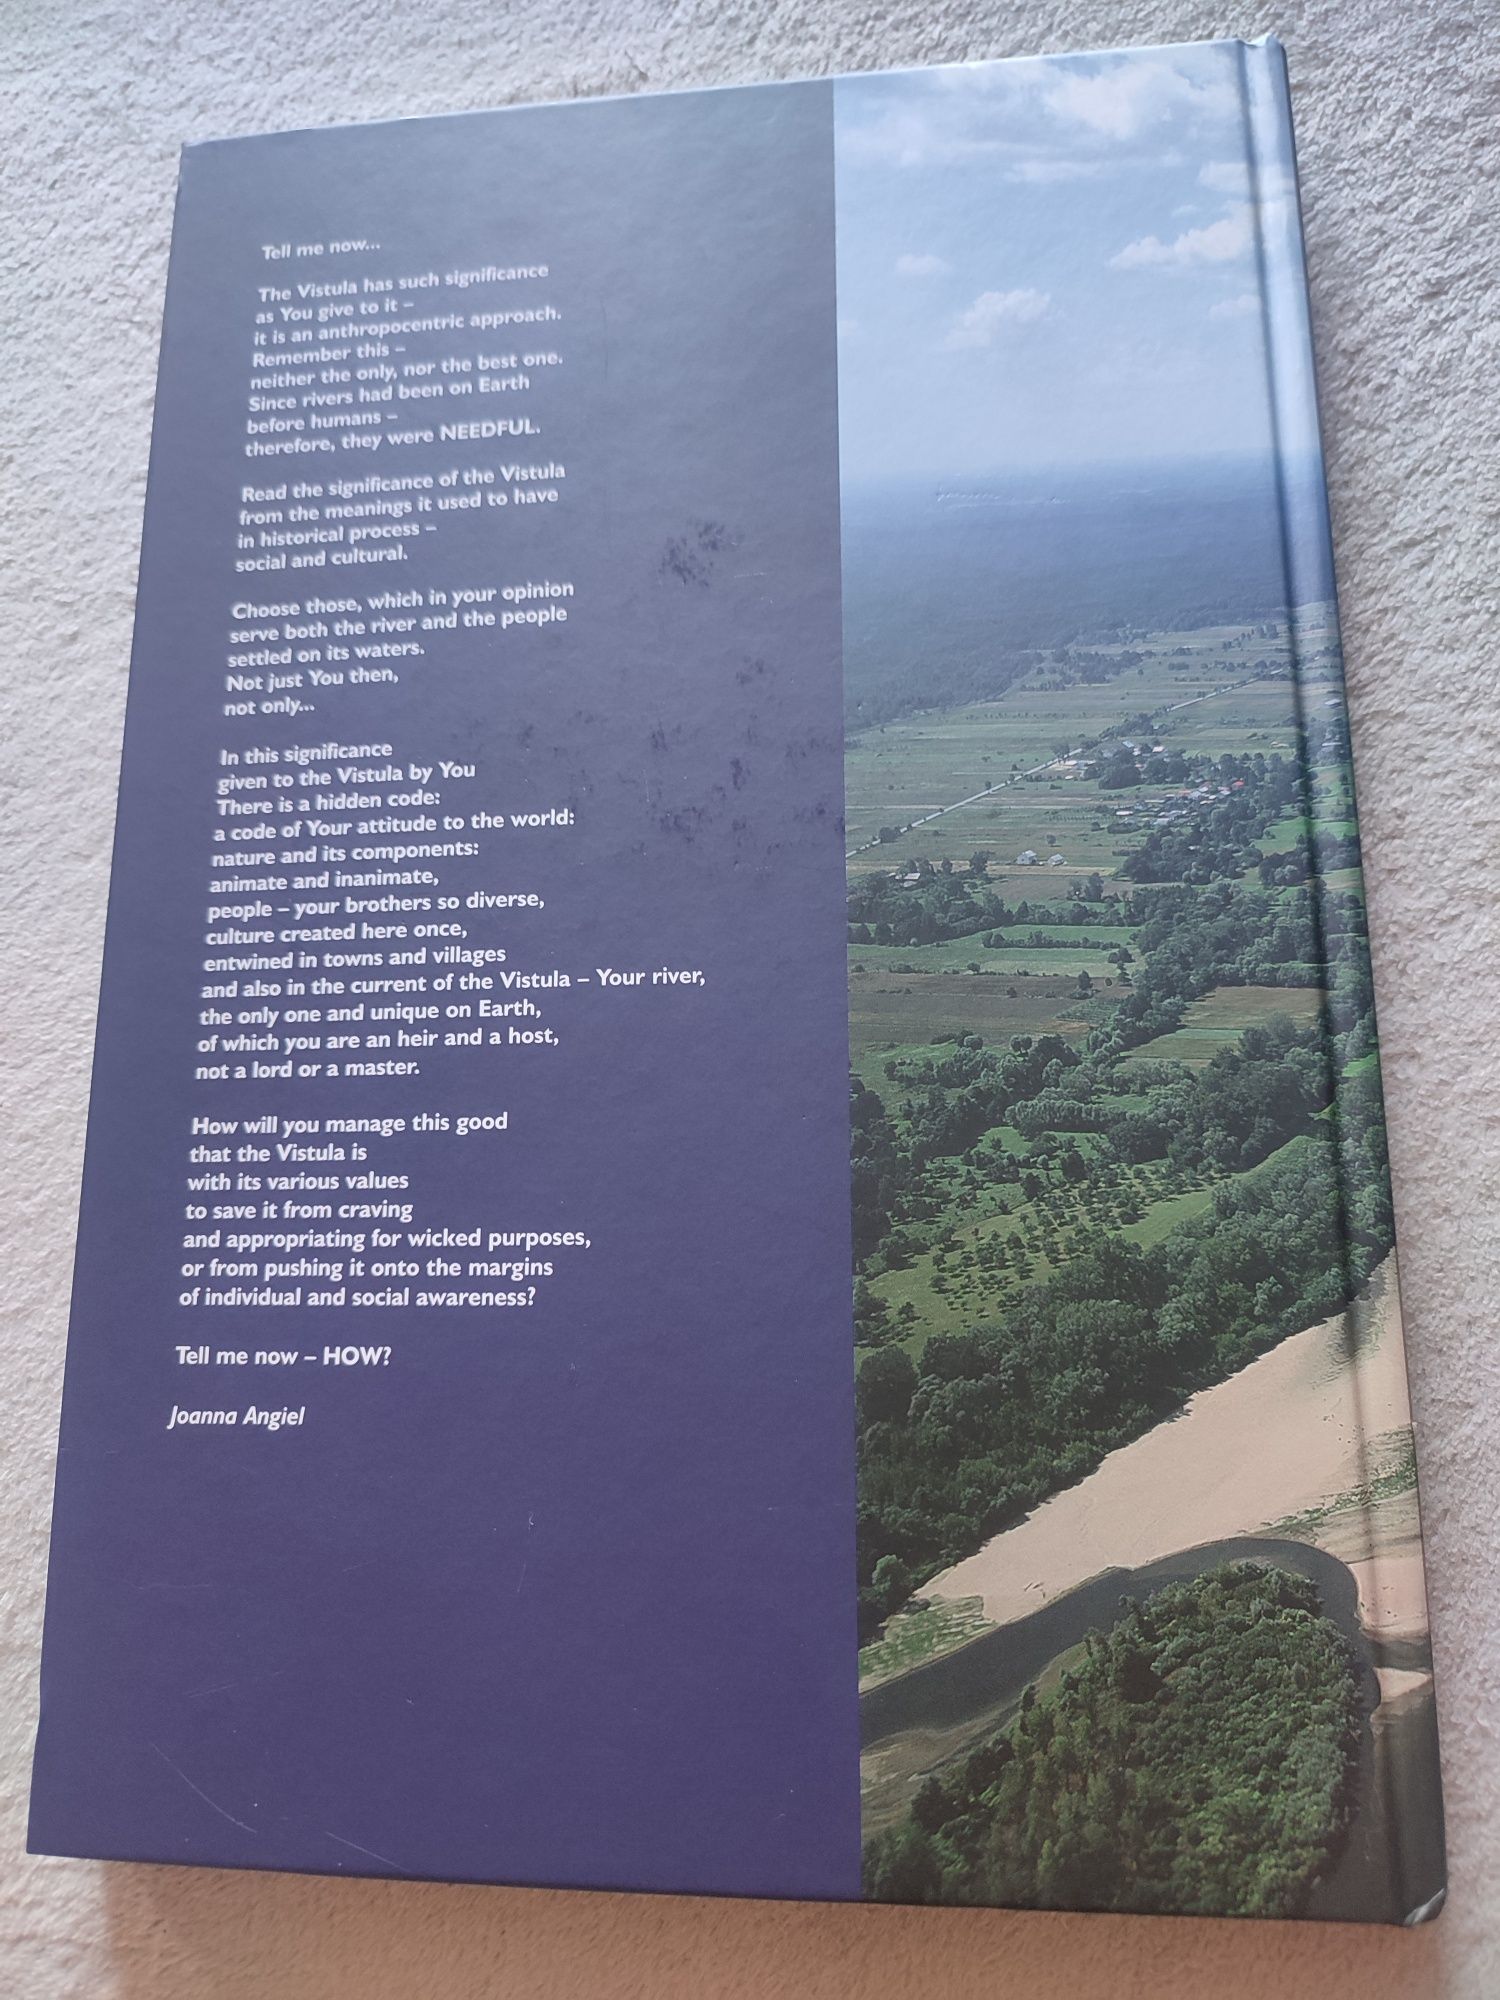 Książka w języku angielskim "On the Vistula" wraz z książką